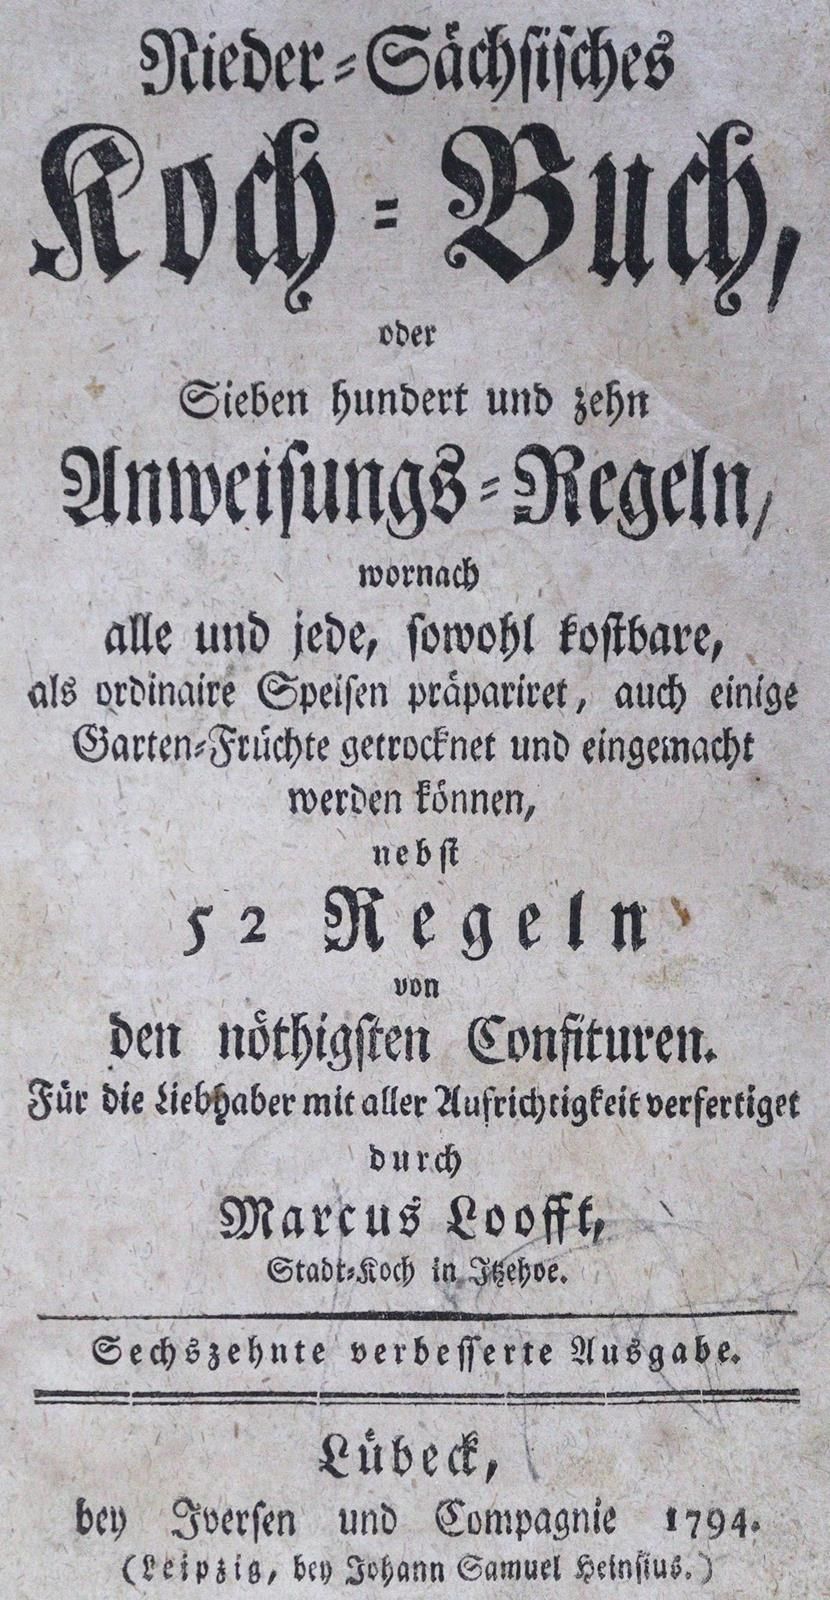 Looft,M. Nieder-Sächsisches Koch-Buch, oder Sieben hundert und zehn Anweisungs-R&hellip;